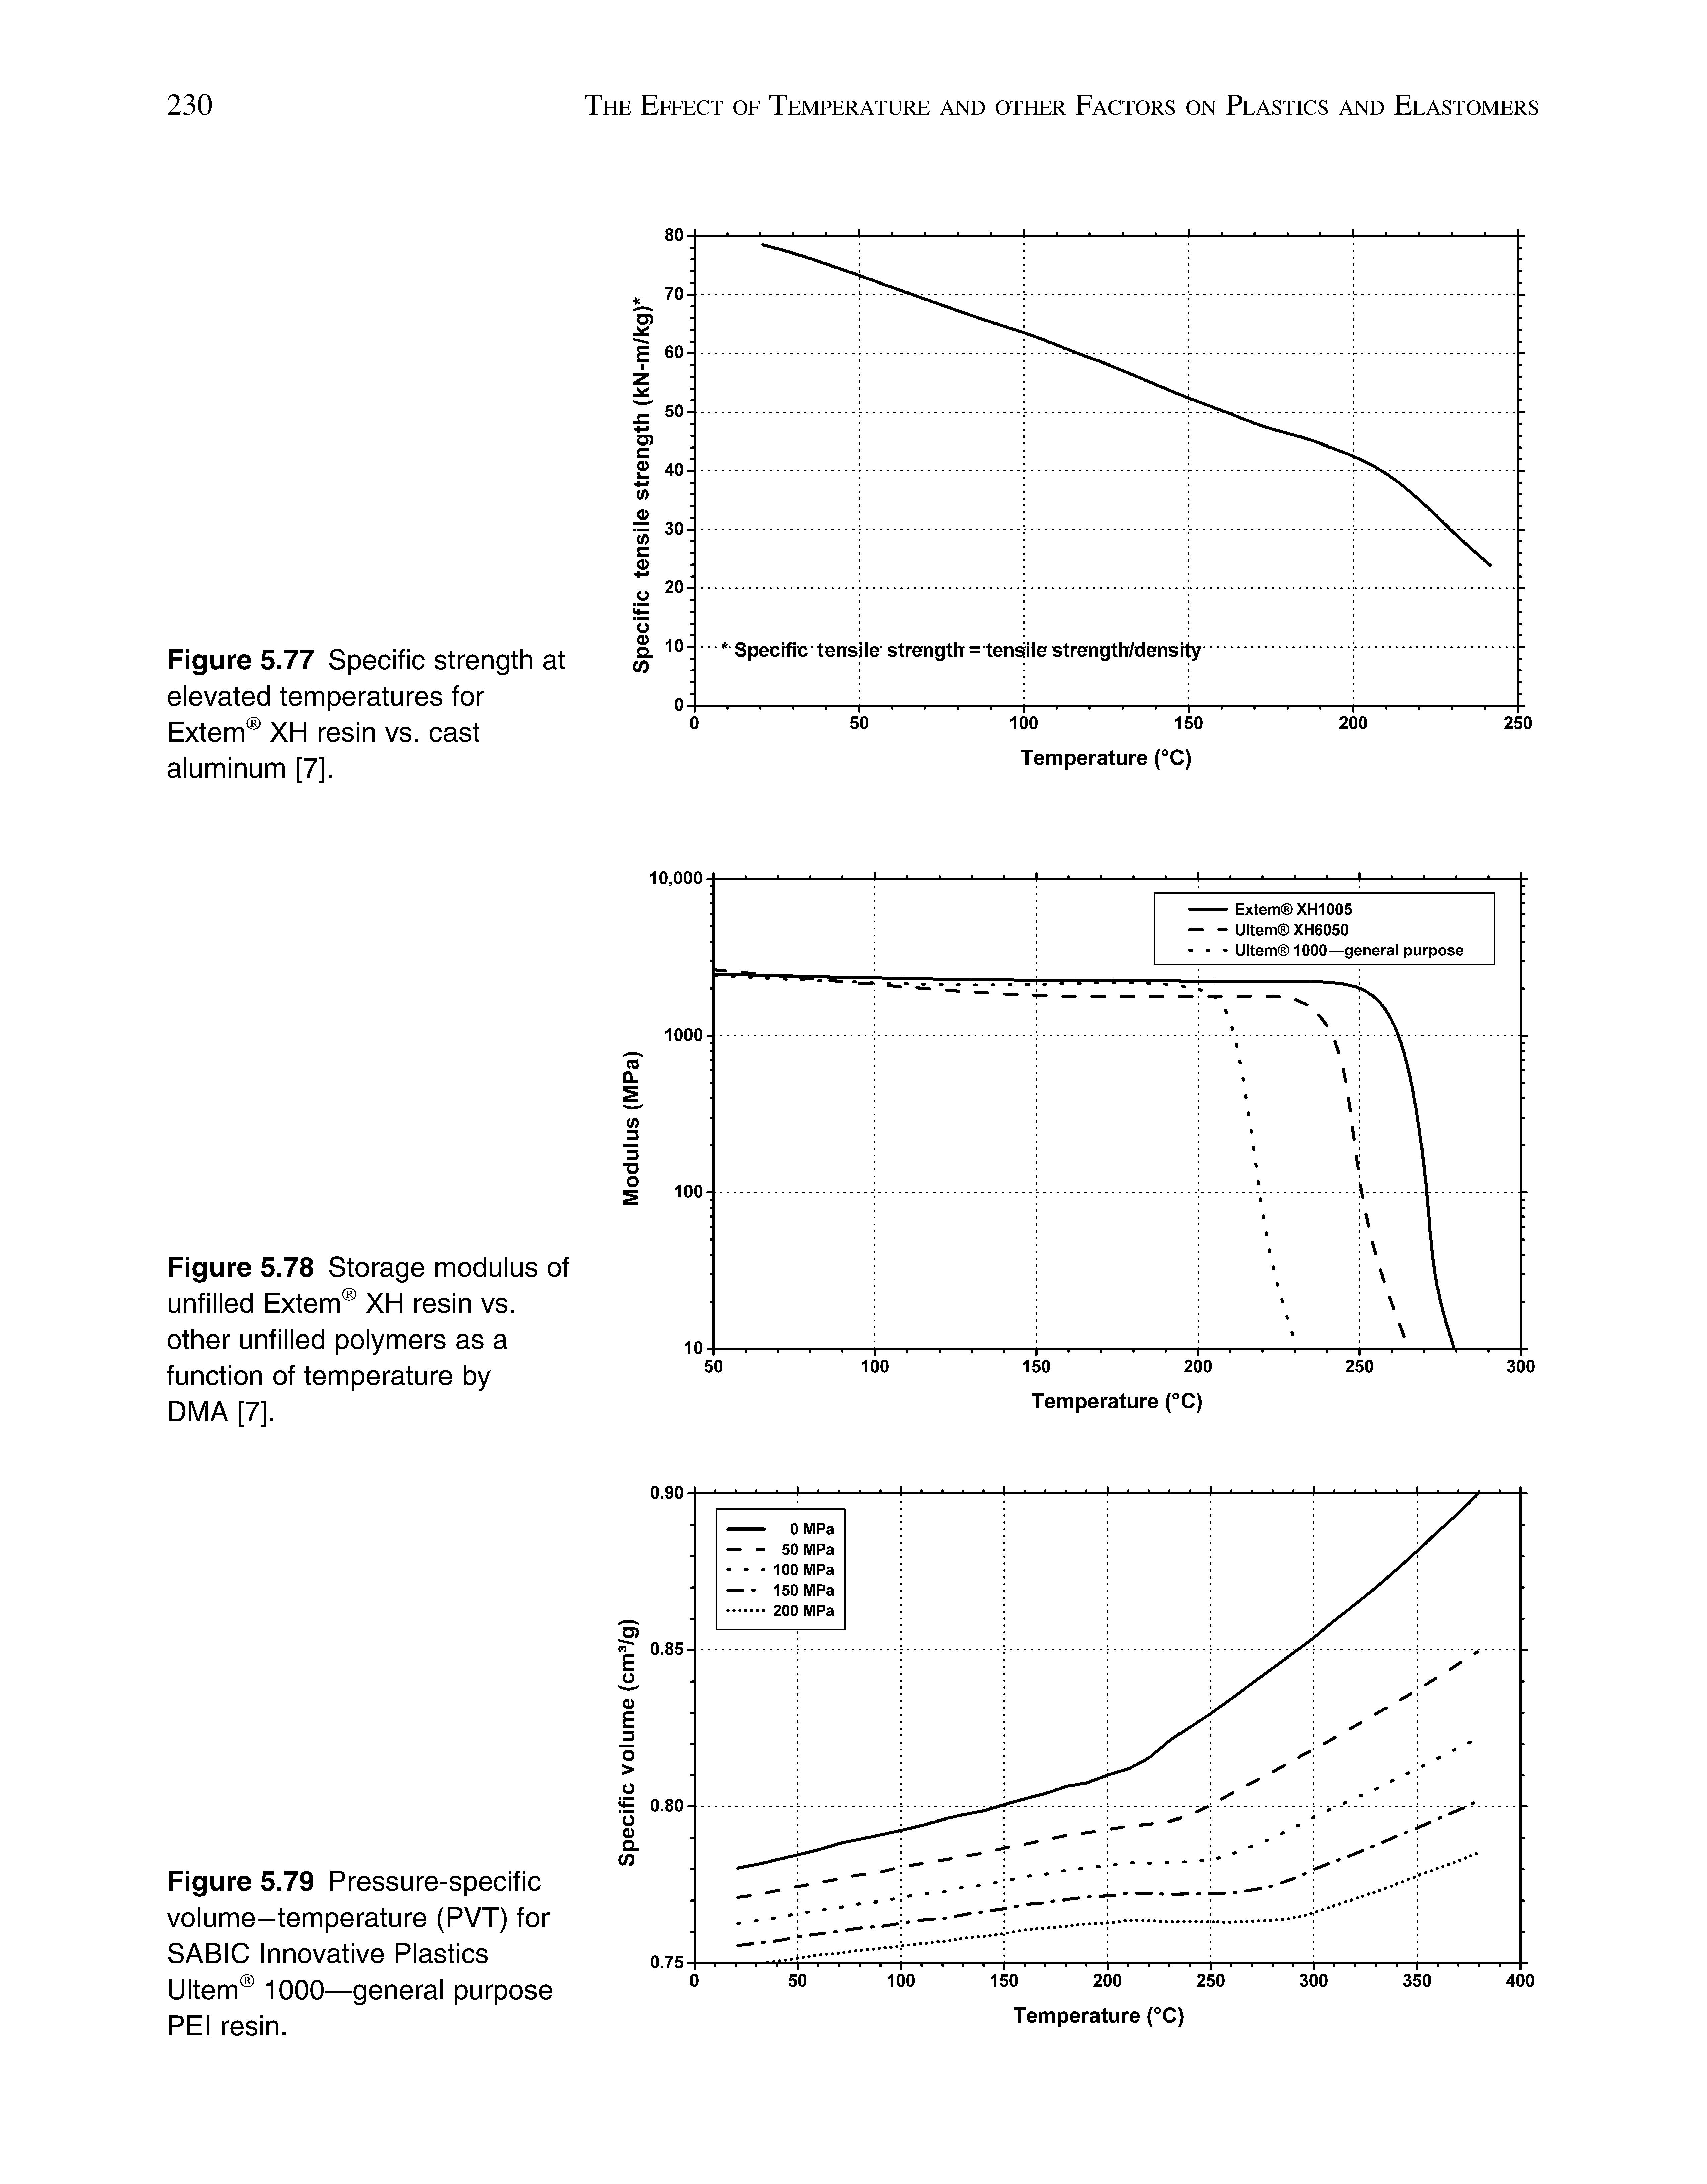 Figure 5.79 Pressure-specific volume-temperature (PVT) for SABIC Innovative Plastics Ultem 1000—general purpose PEI resin.